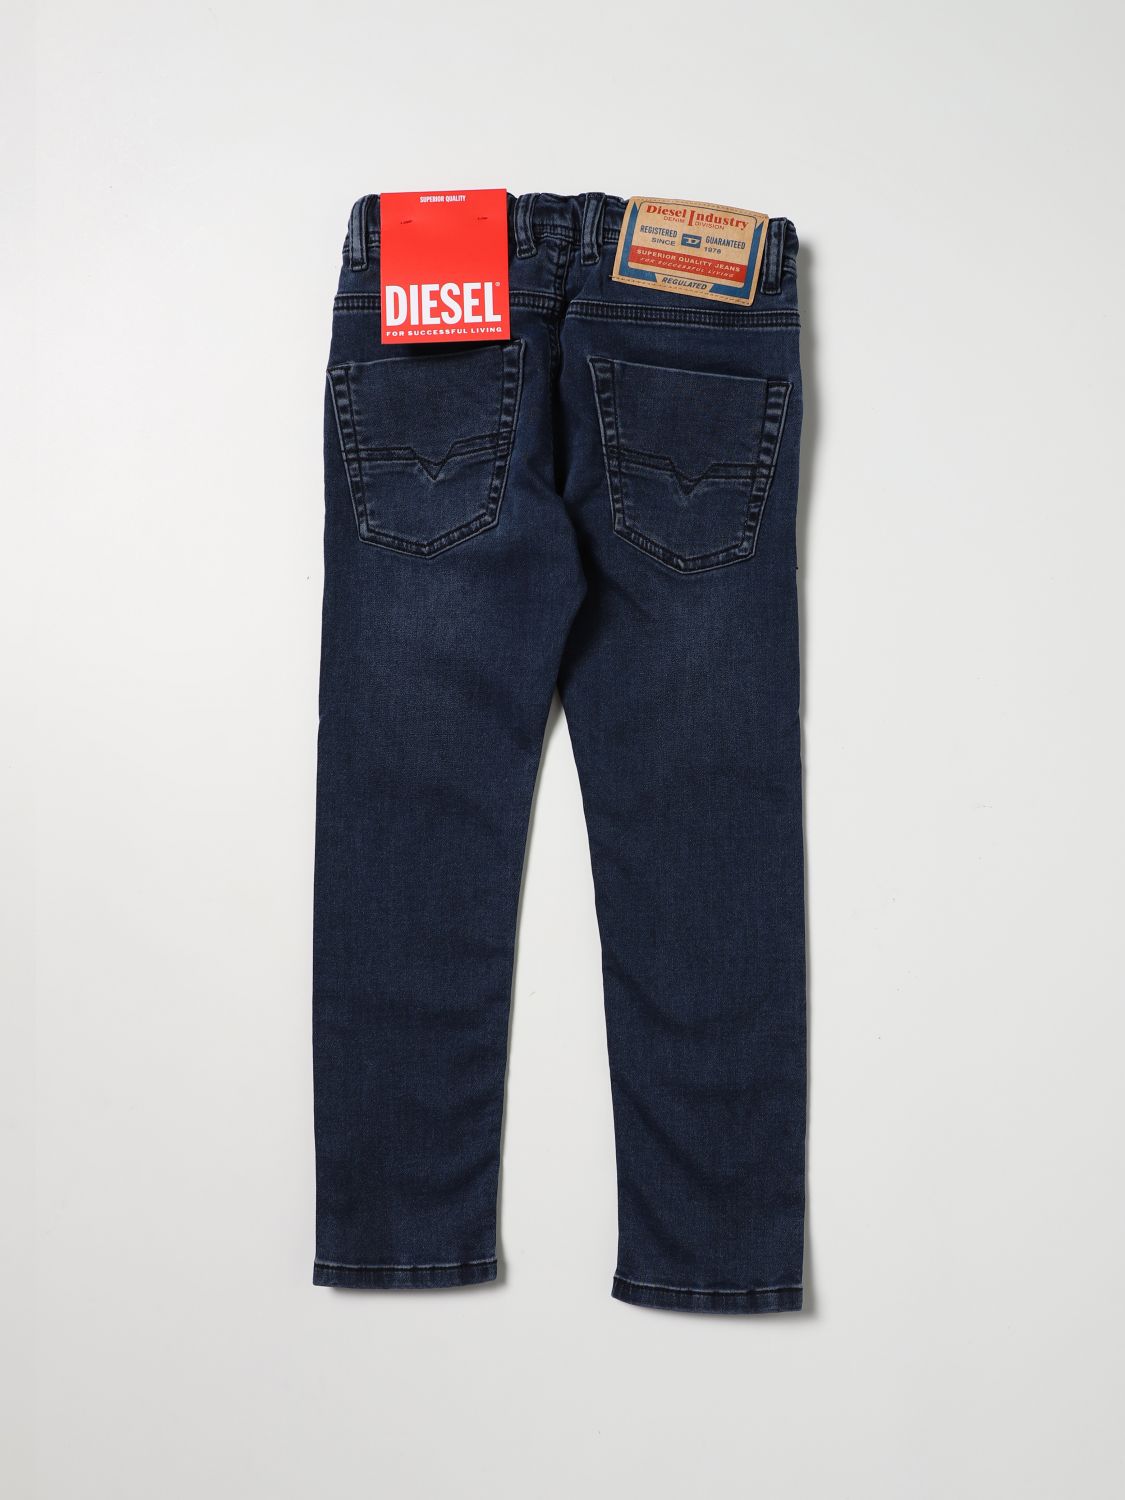 DIESEL: Skinny jeans drawstring - Blue | jeans 00J3AJKXBC2 online GIGLIO.COM